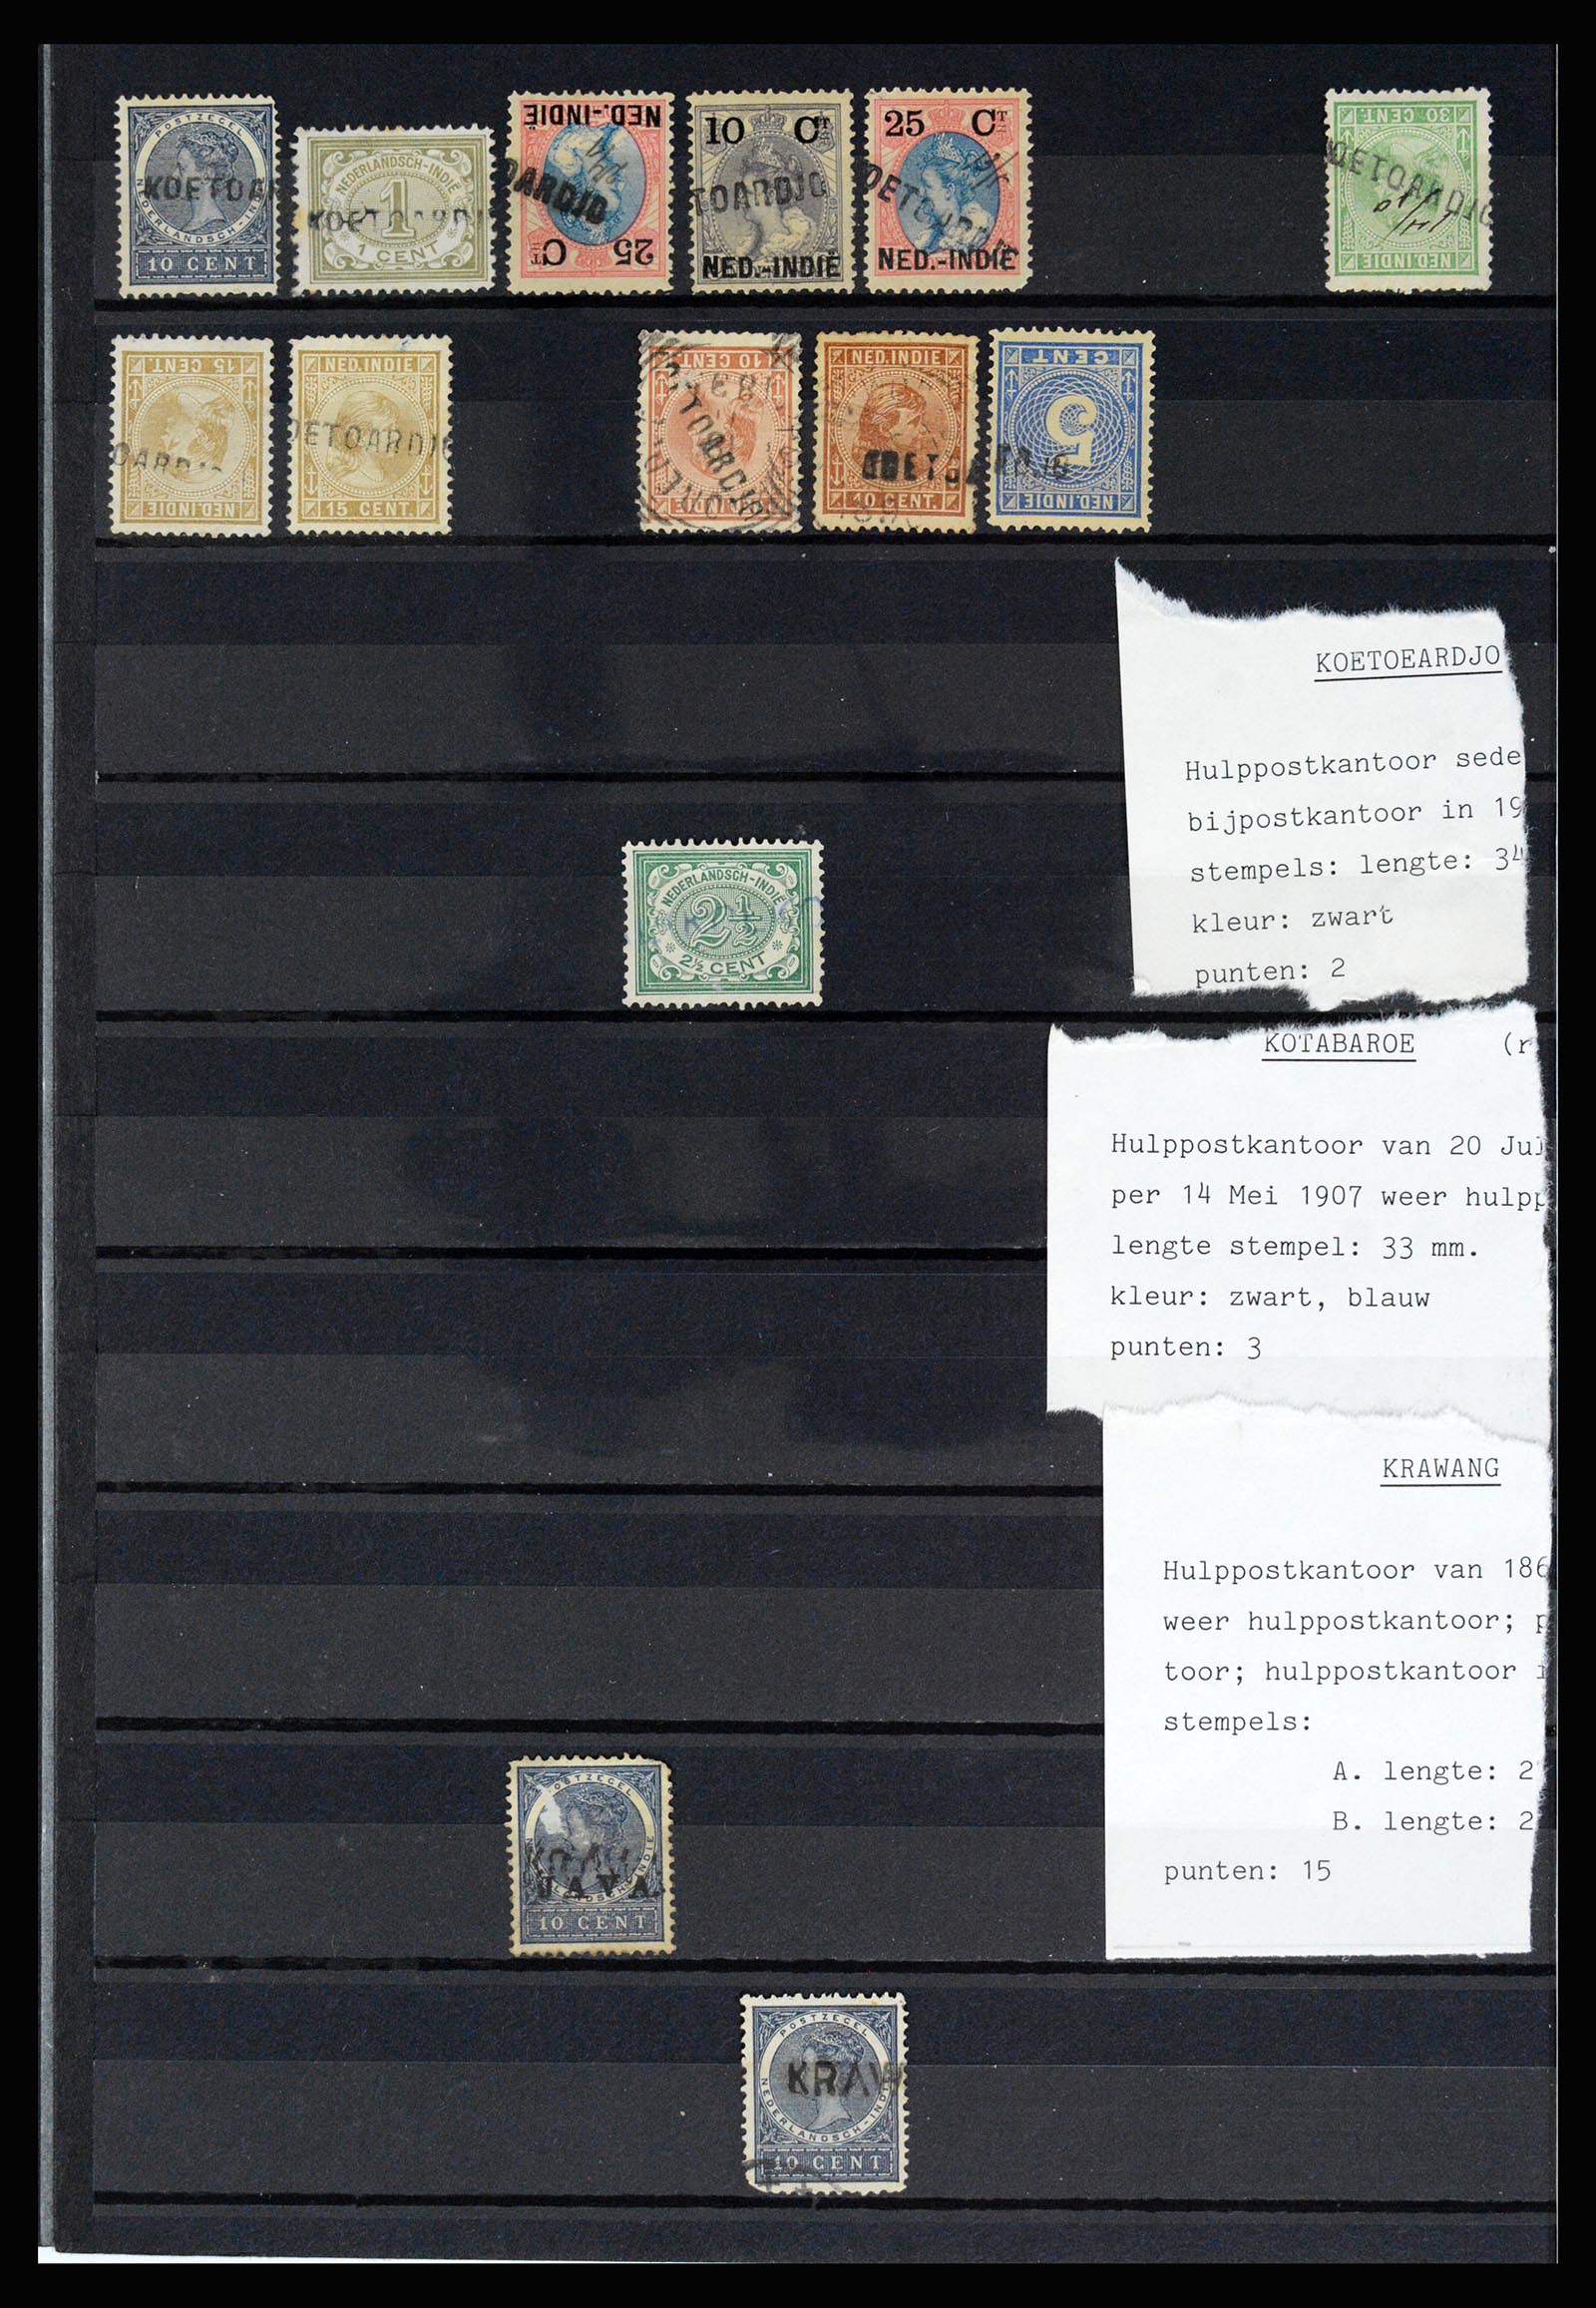 36512 036 - Stamp collection 36512 Nederlands Indië stempels 1872-1930.